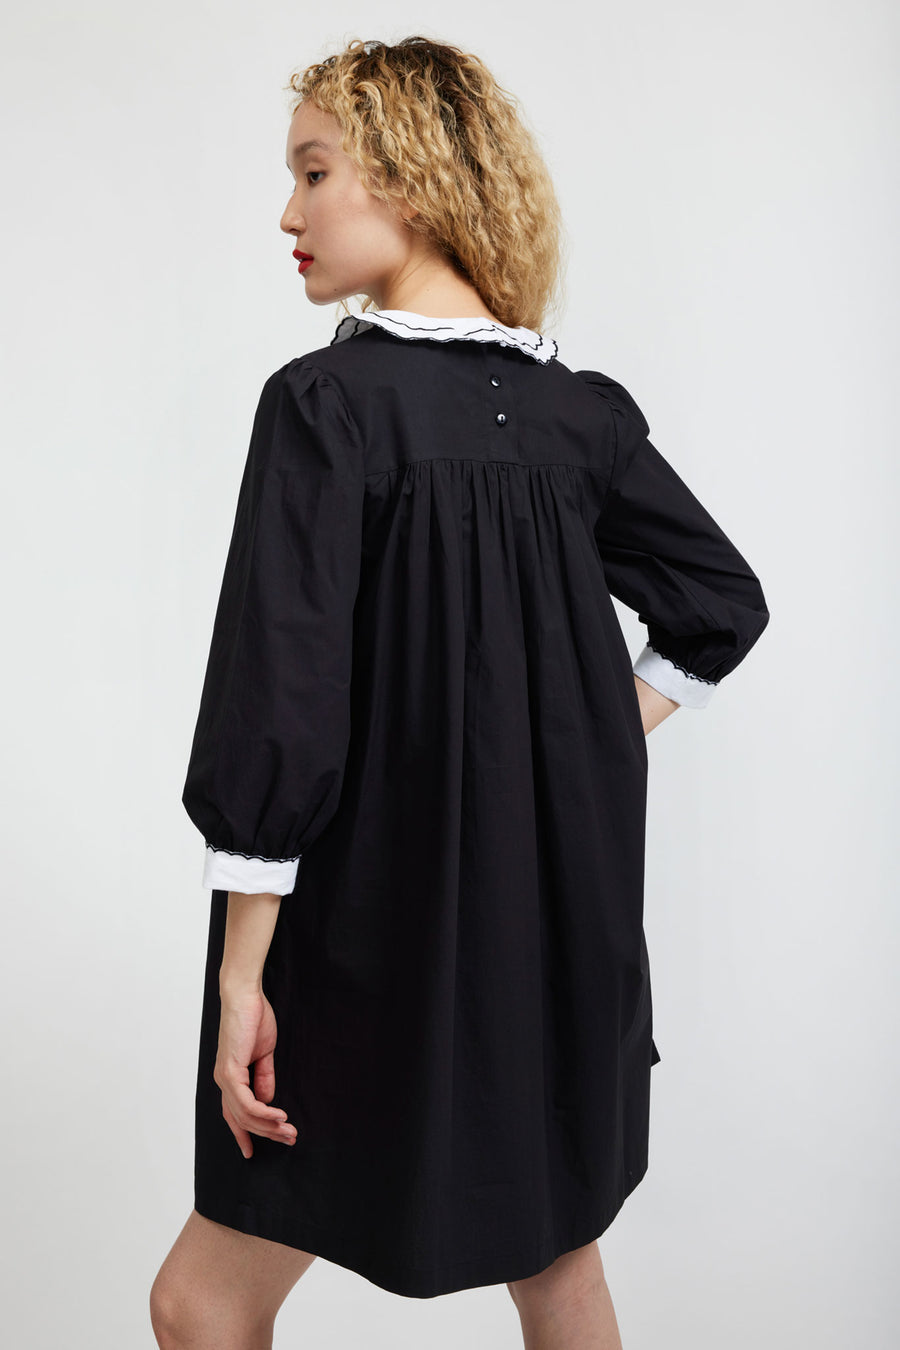 BATSHEVA - Pauline Dress in Black